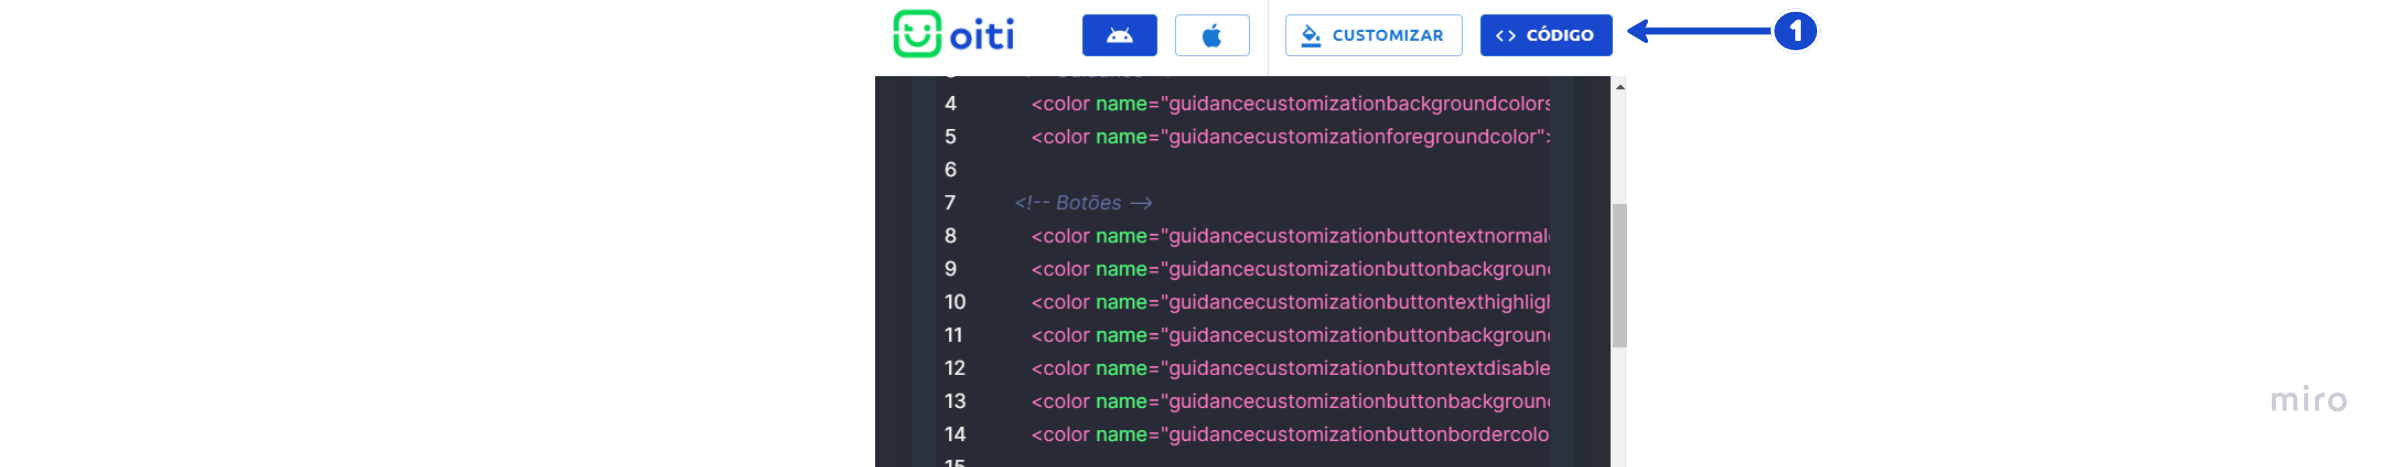 Localização do botão "código" para exportação das customizações.